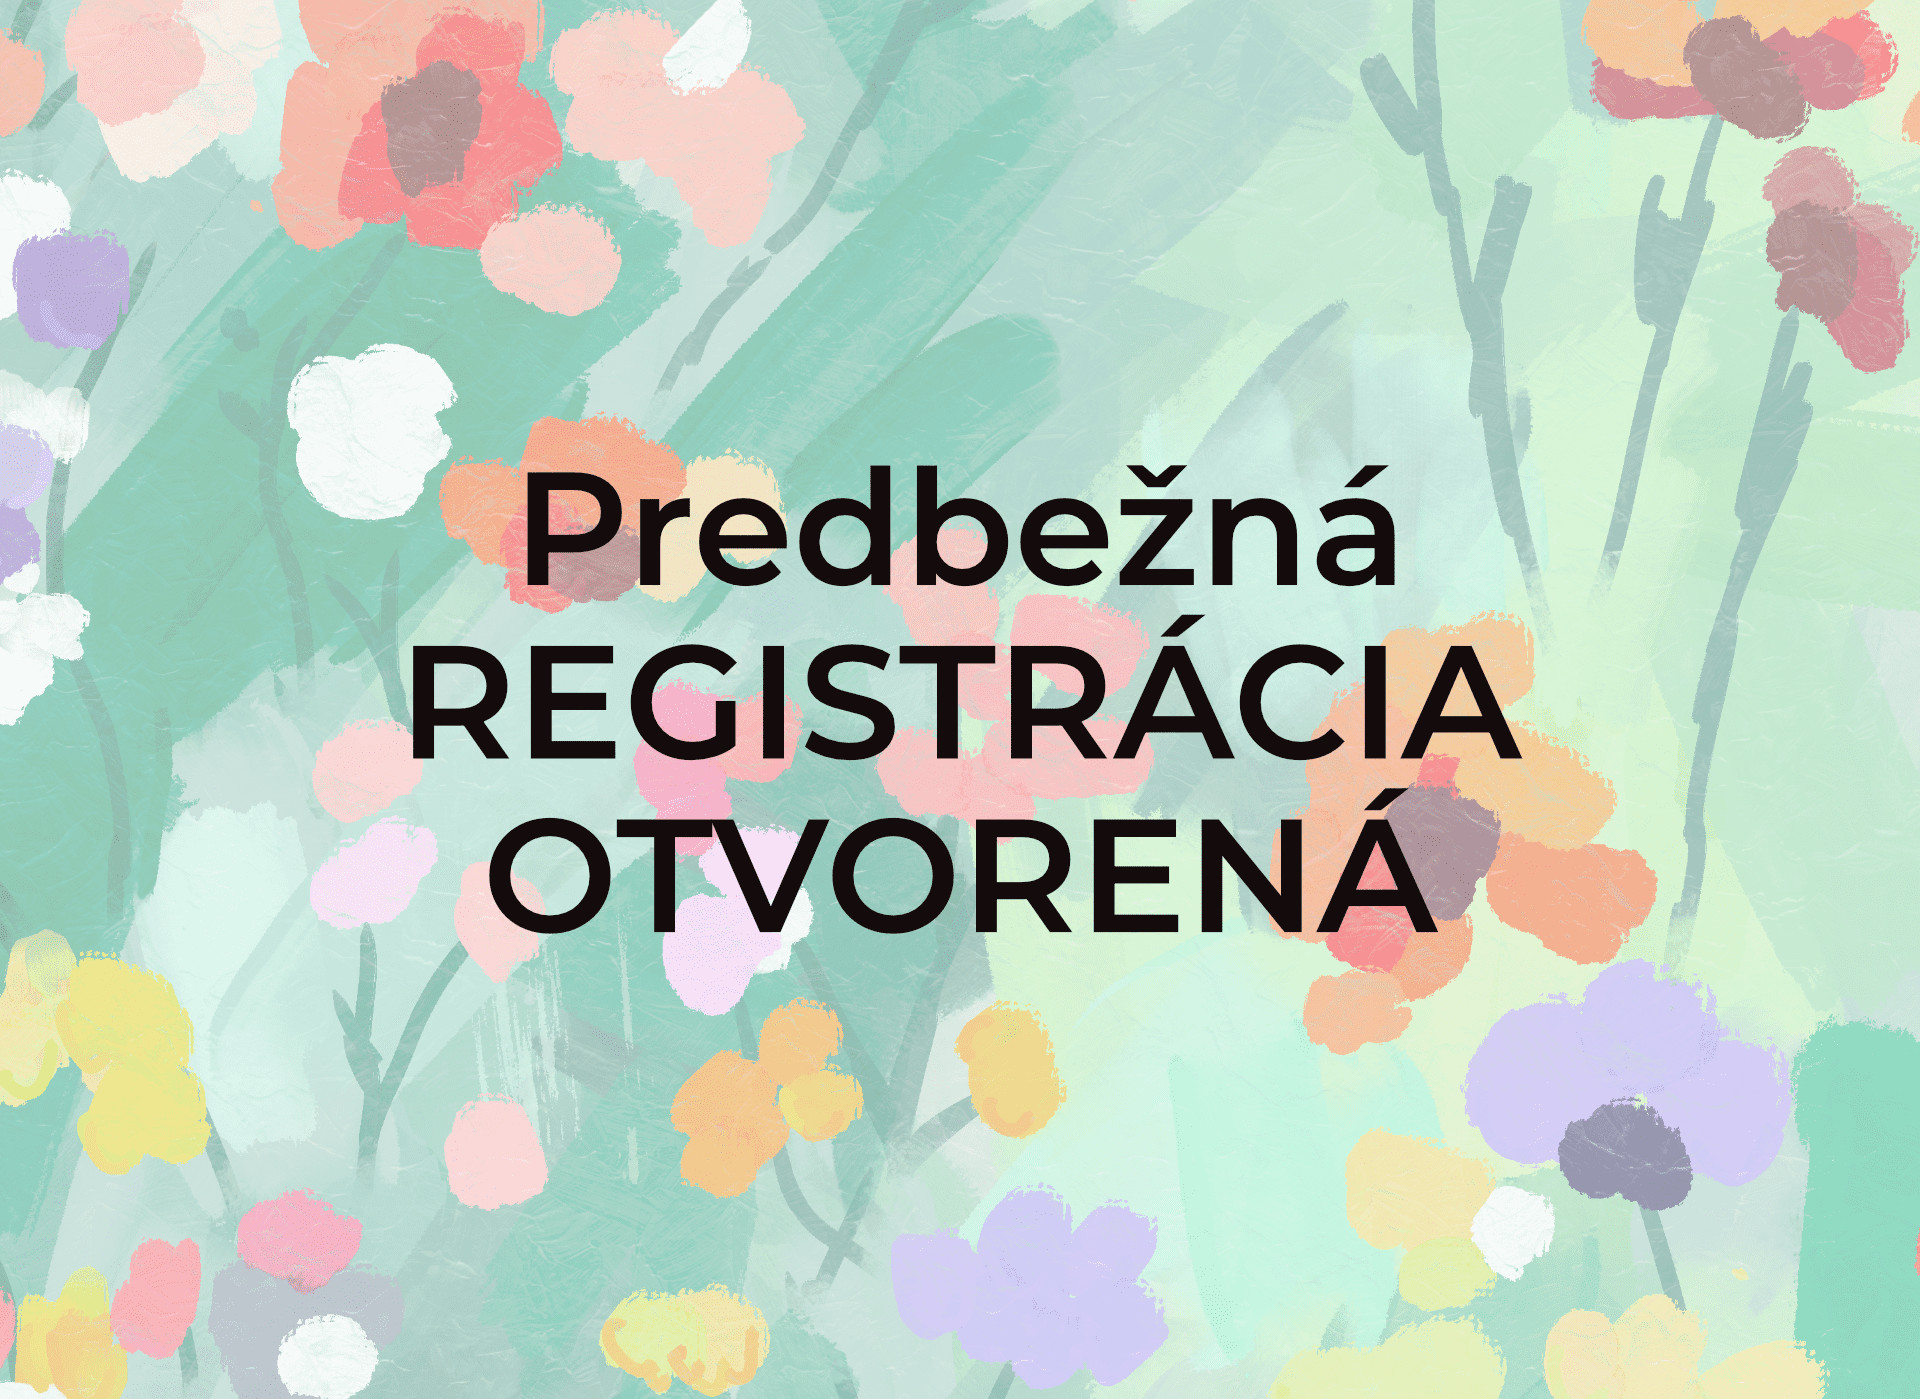 Predbežná registrácia pre Bratislavu otvorená, TRE workshop, Jana Račková Vyskočil